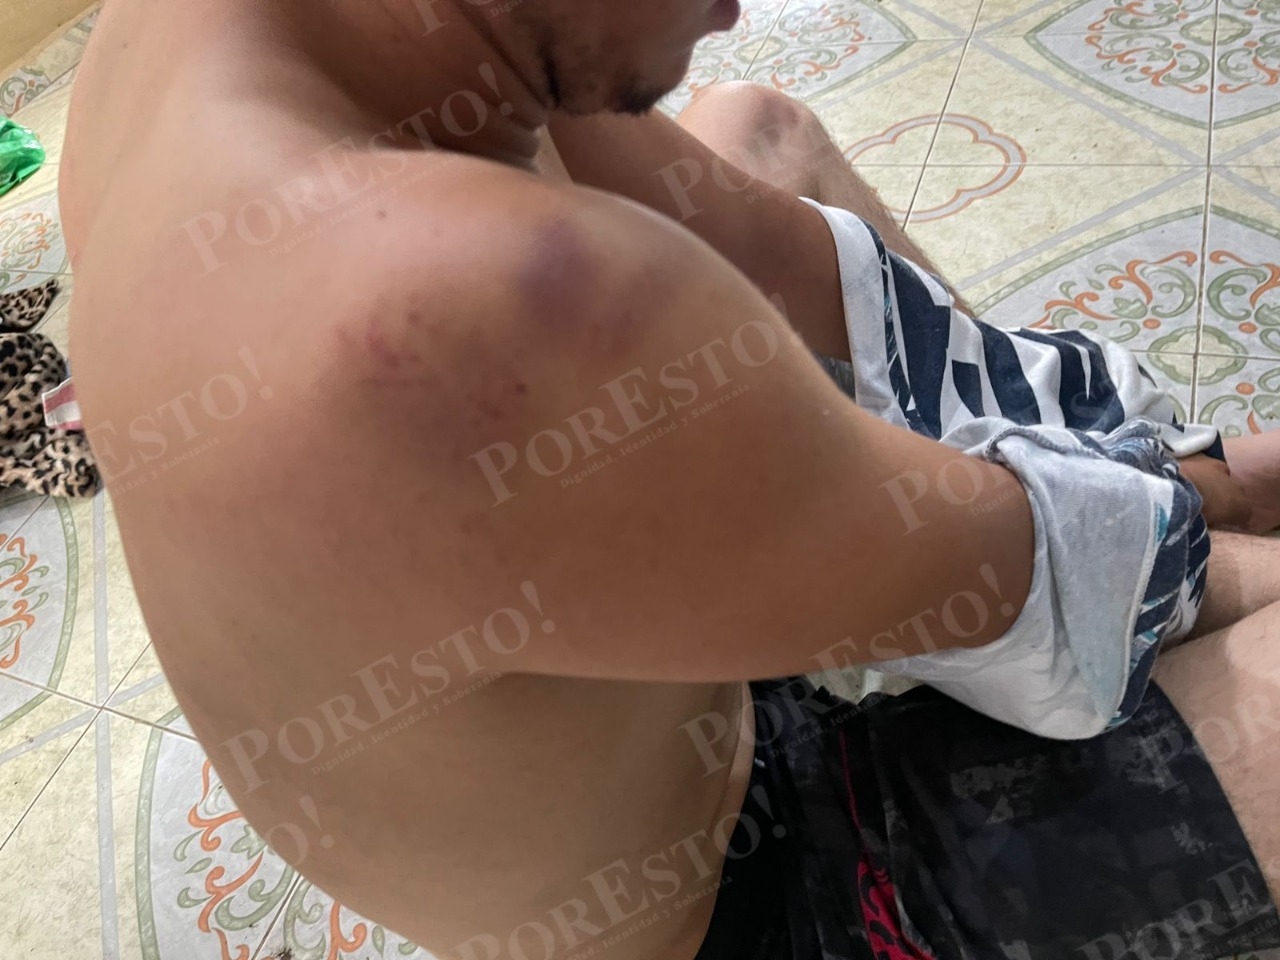 Filtran fotos de José Eduardo después de haber sido agredido por policías de Mérida: FOTOS